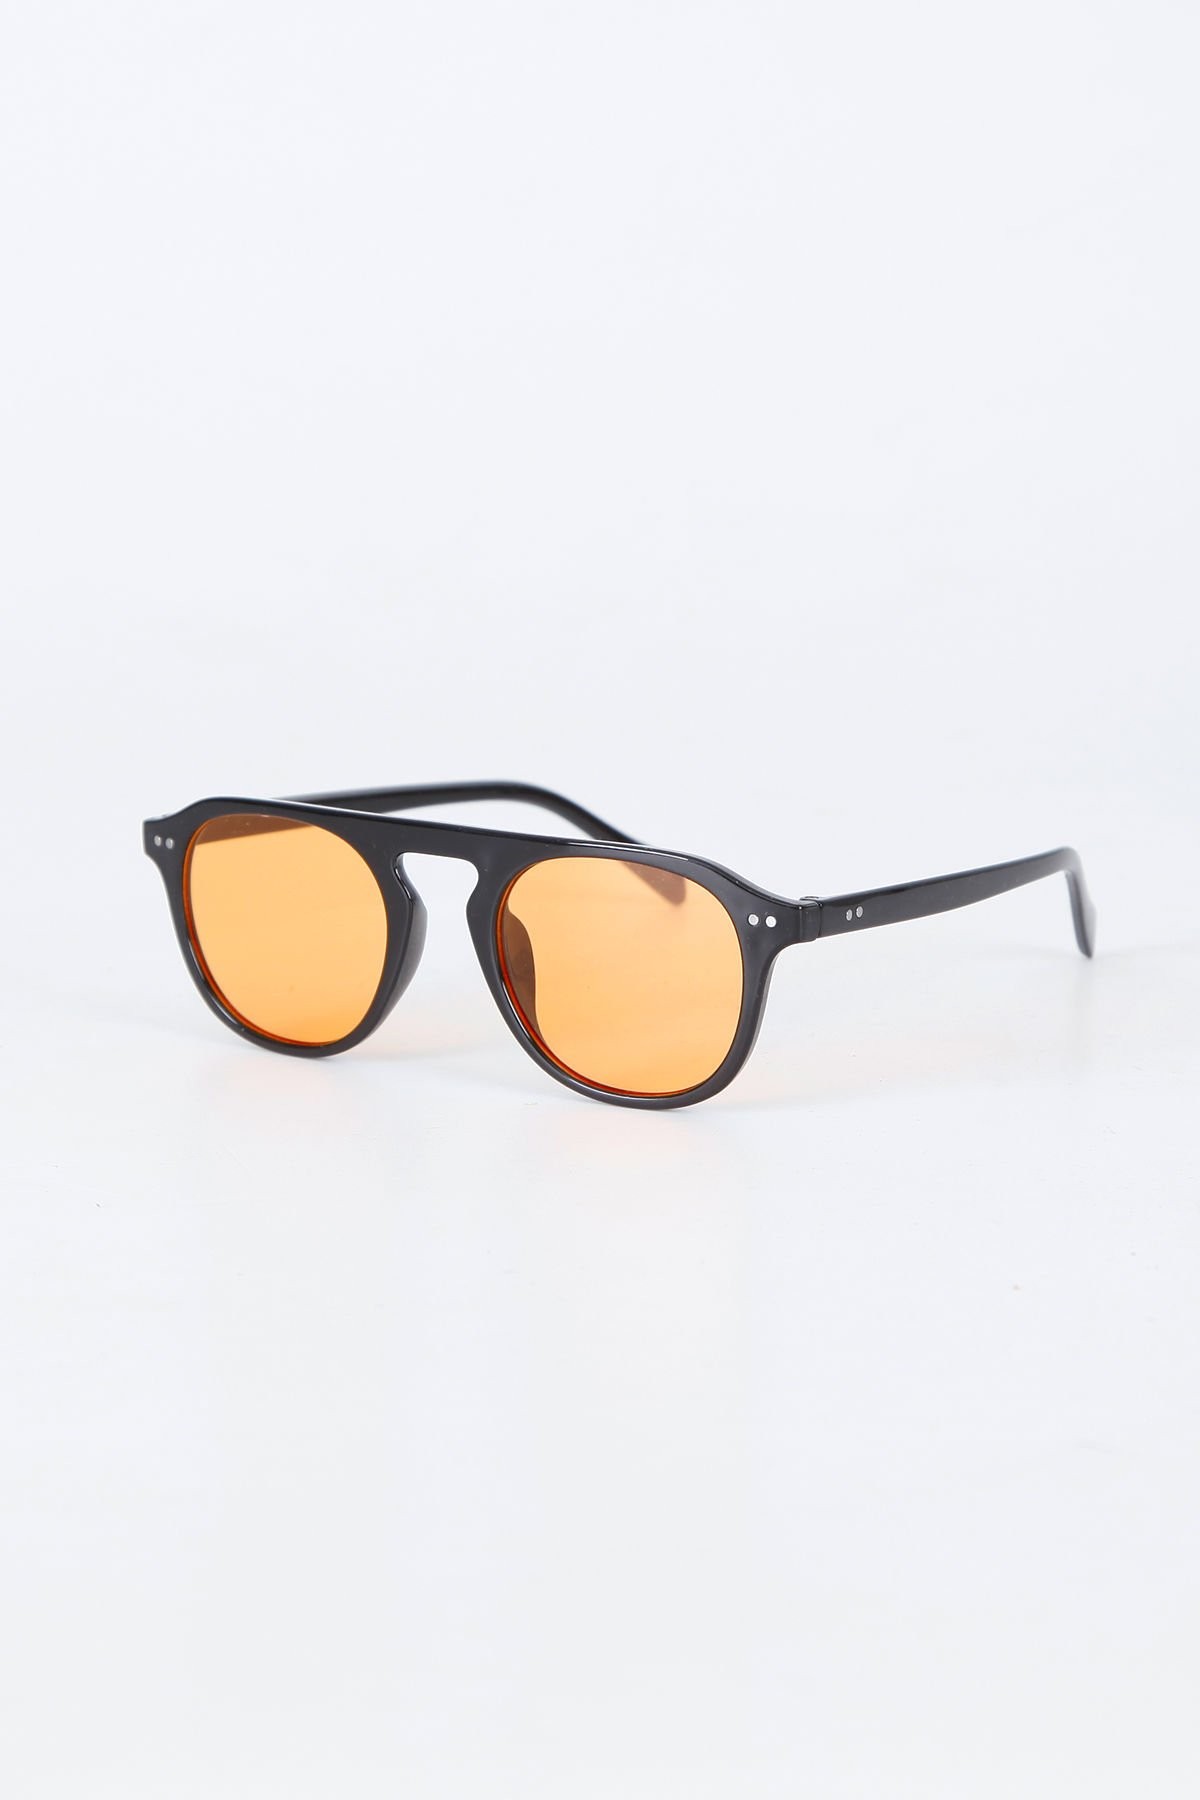 xpend retro güneş gözlüğü - siyah çerçeve seffaf turuncu cam güneş gözlüğü